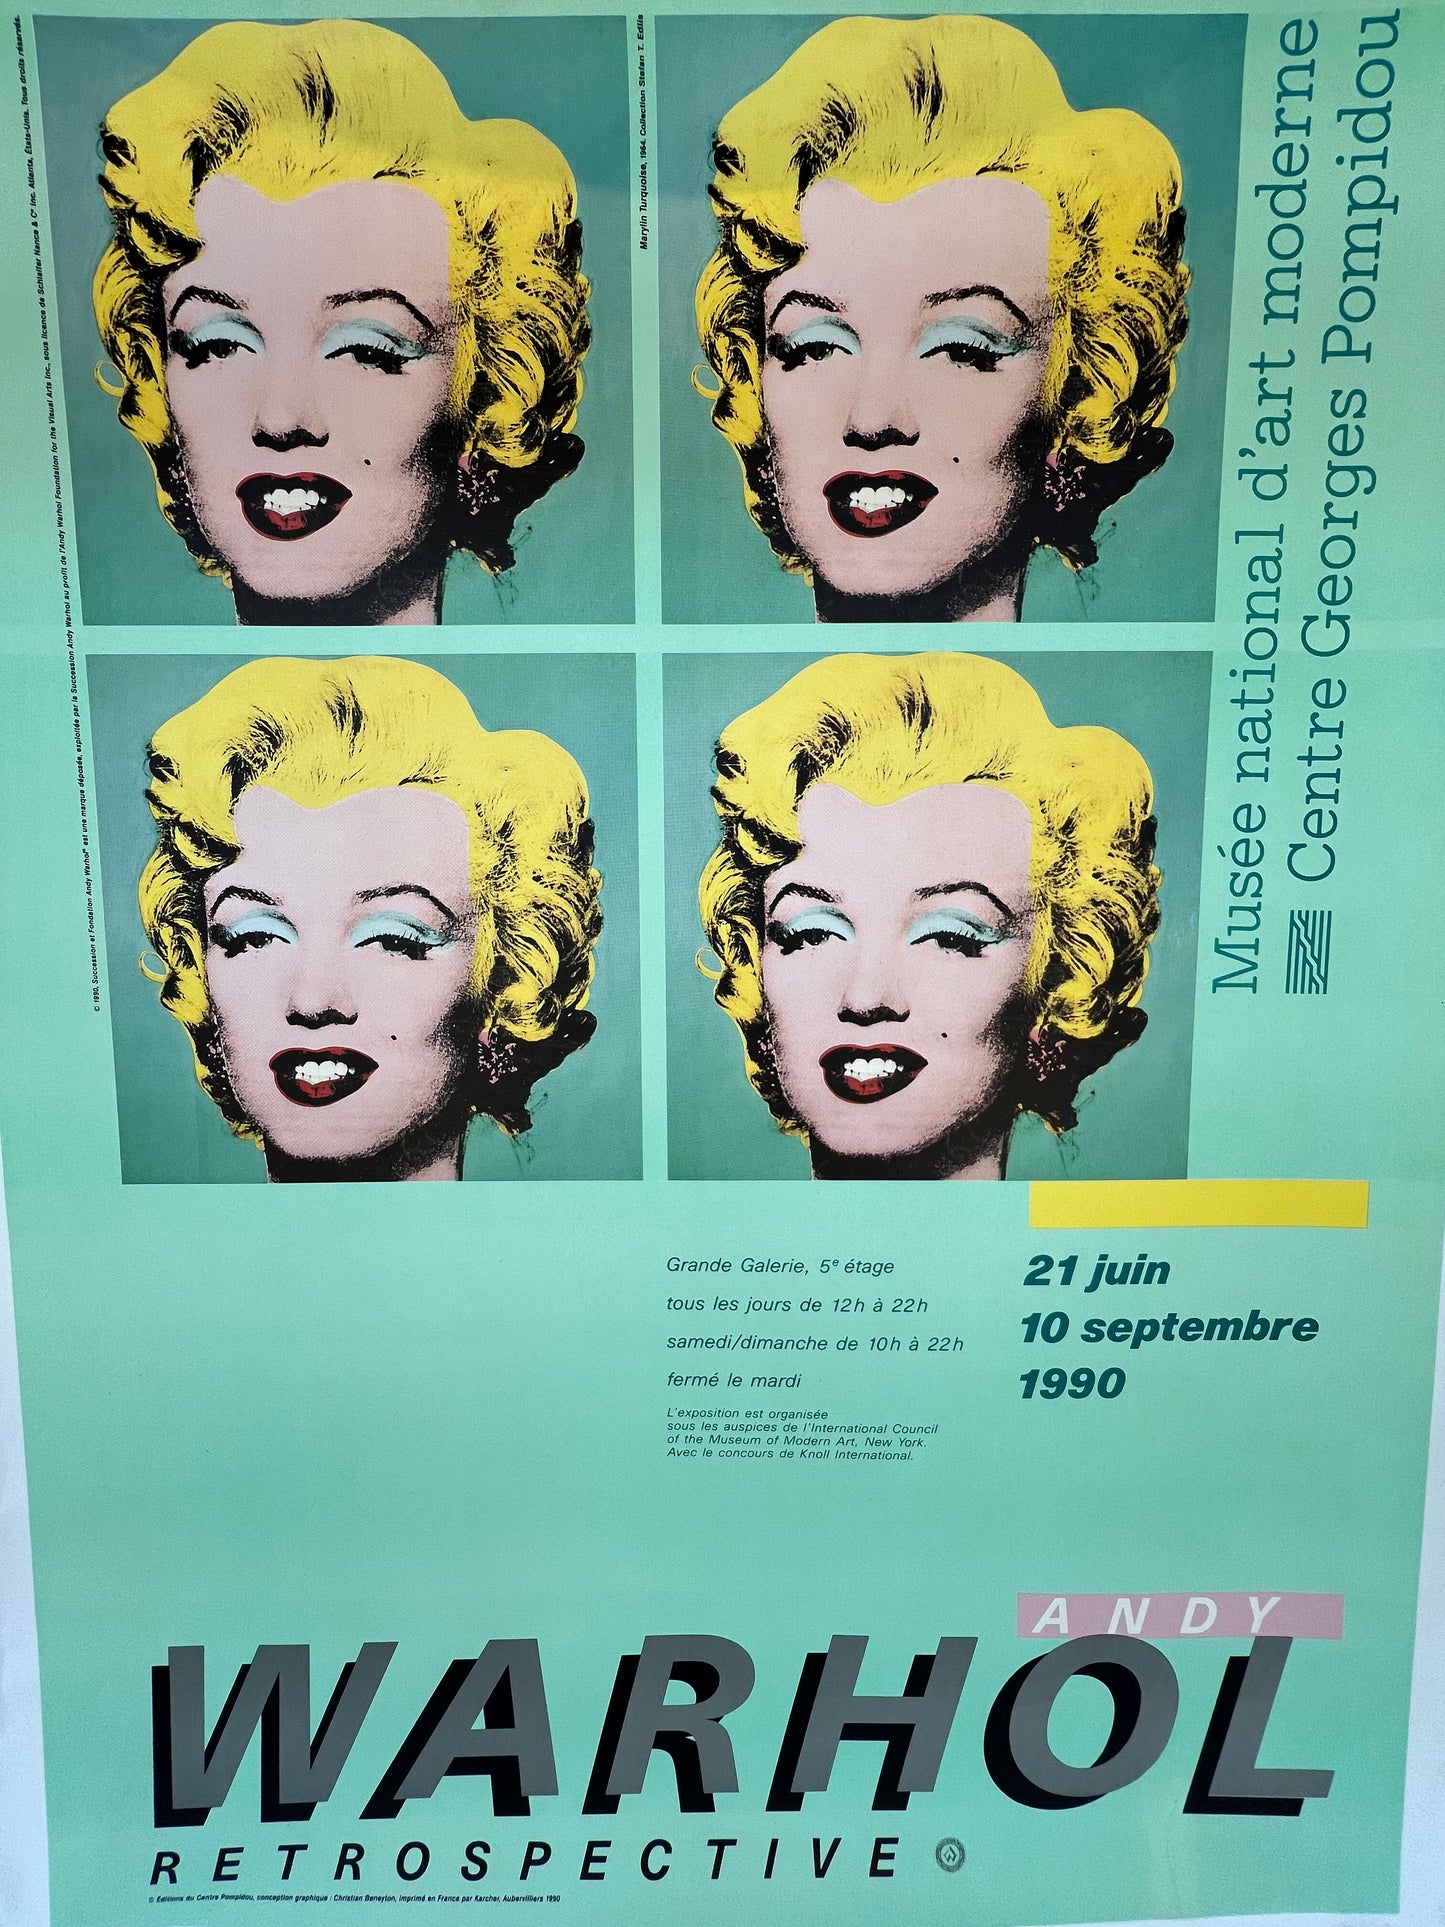 Marilyn Monroe Retrospective by Warhol